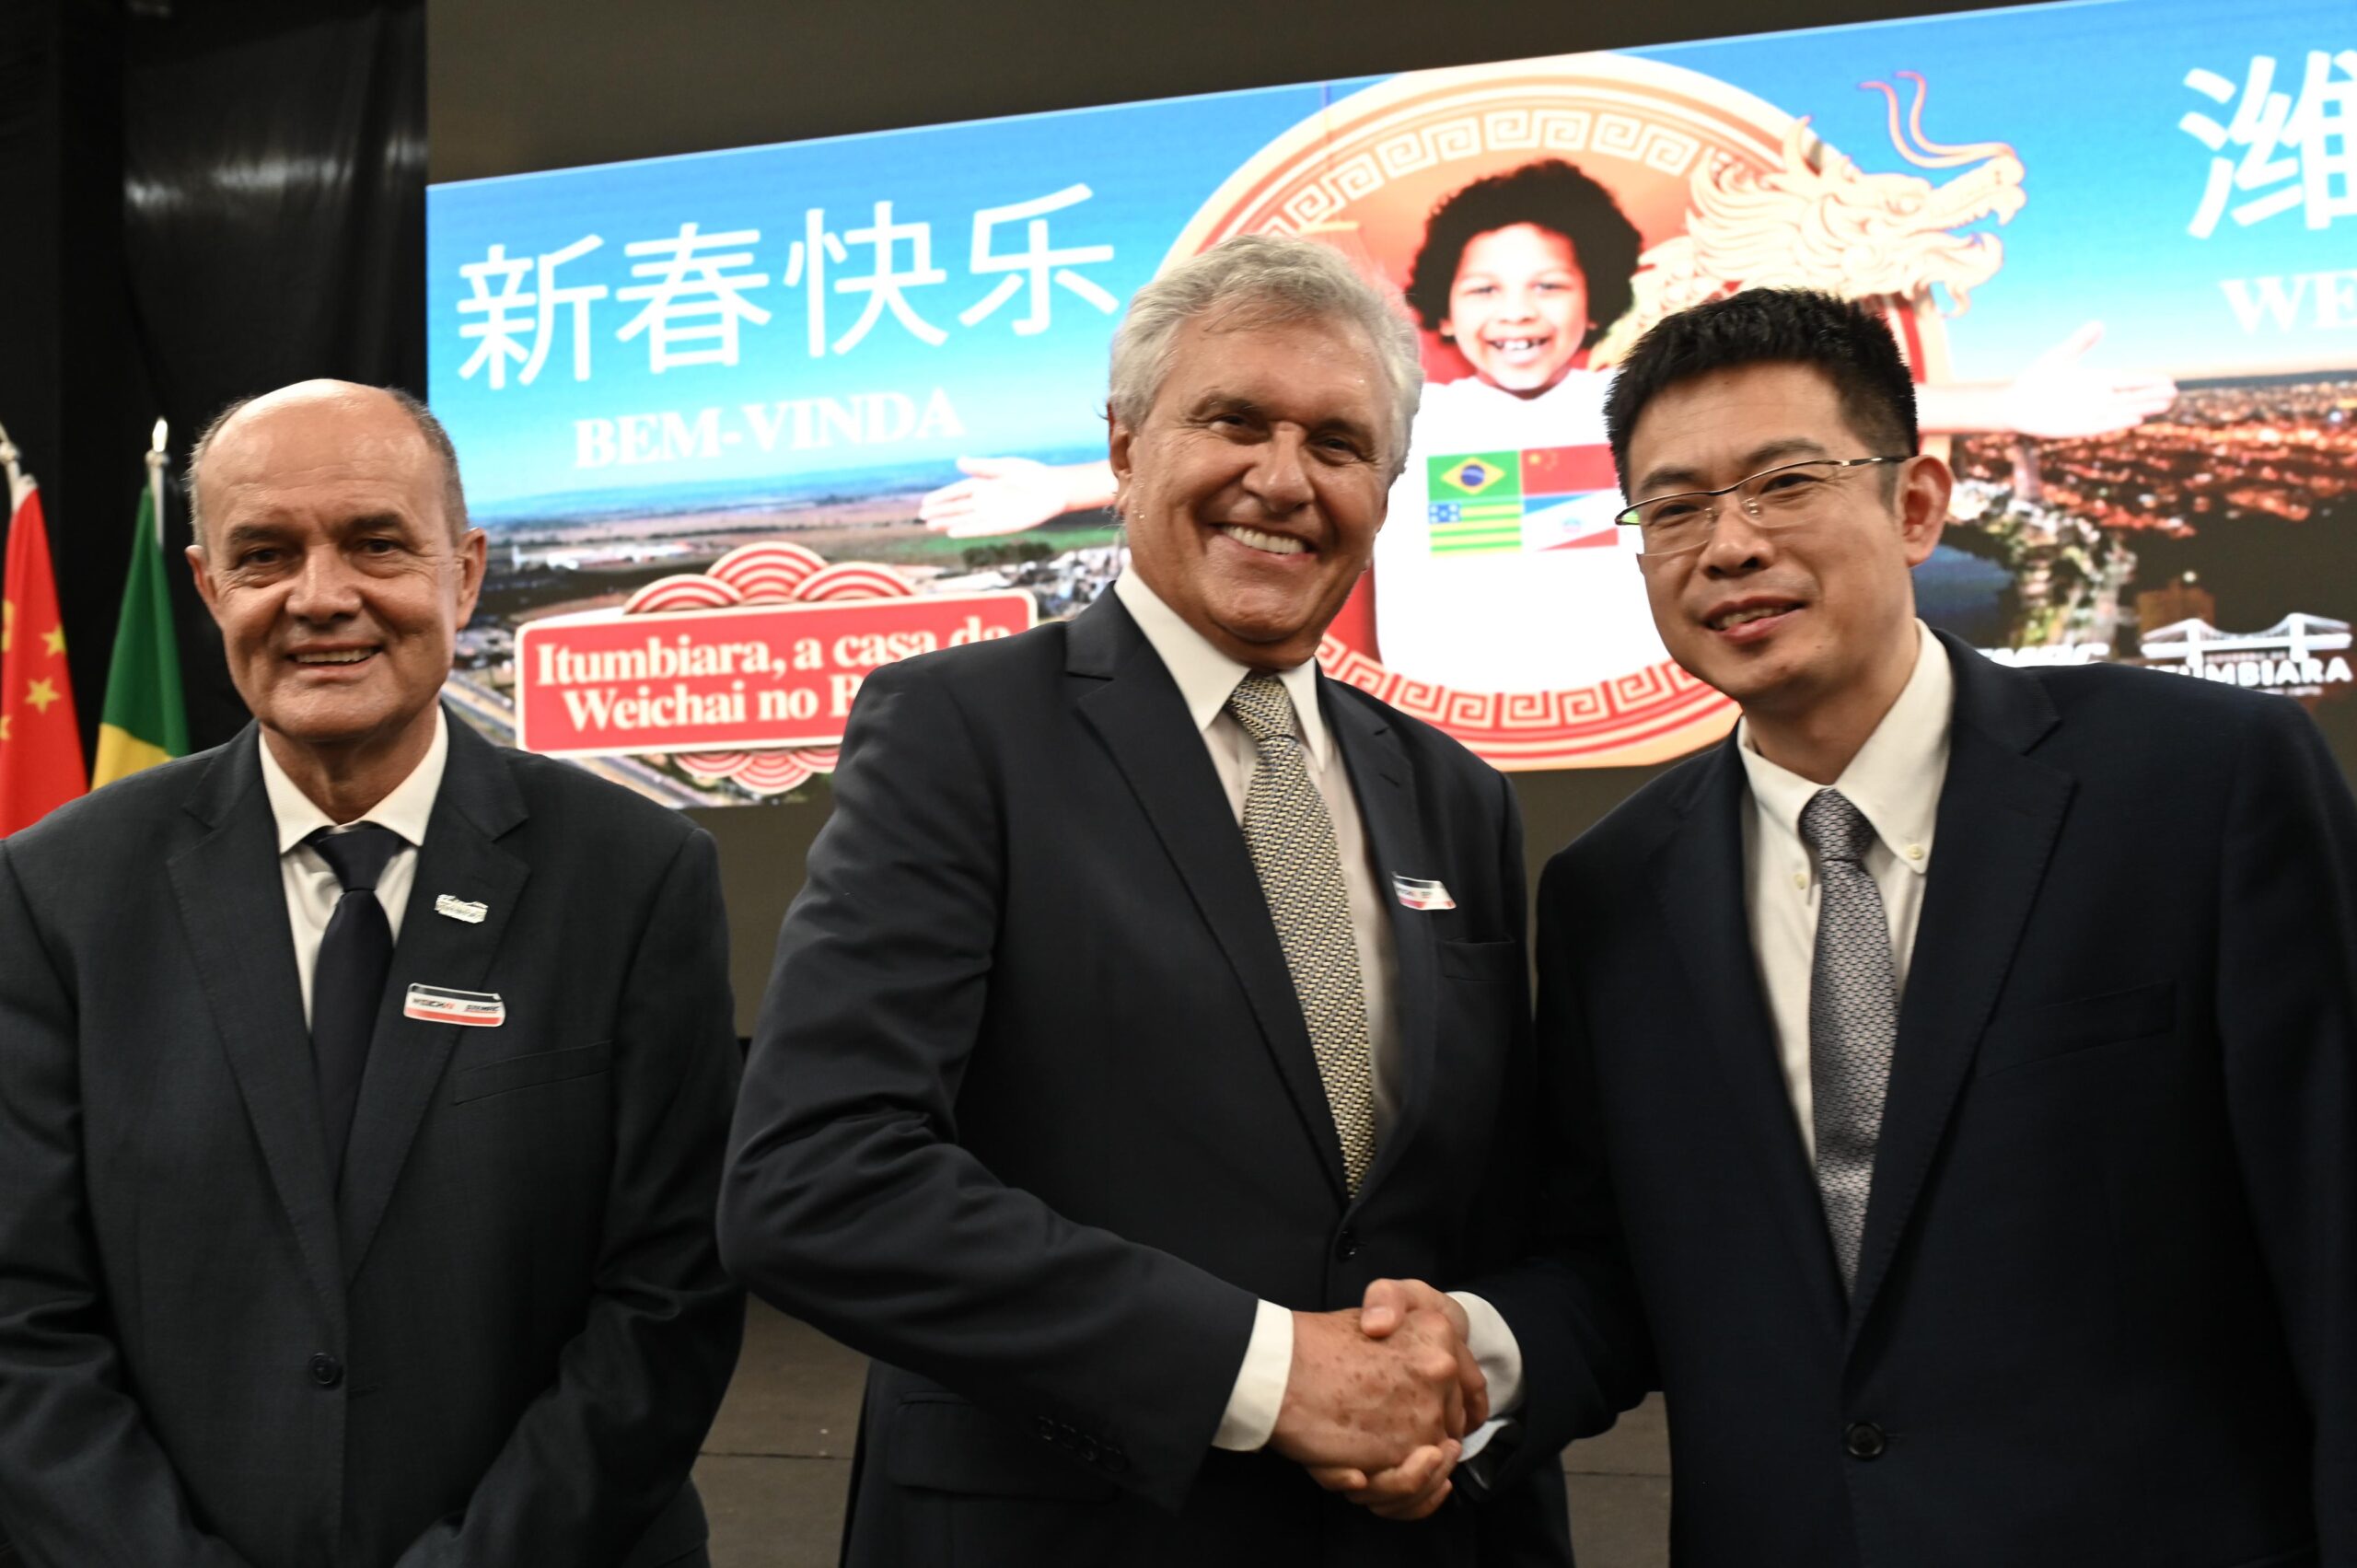 Caiado oficializa instalação da multinacional chinesa WeiChai, em Itumbiara